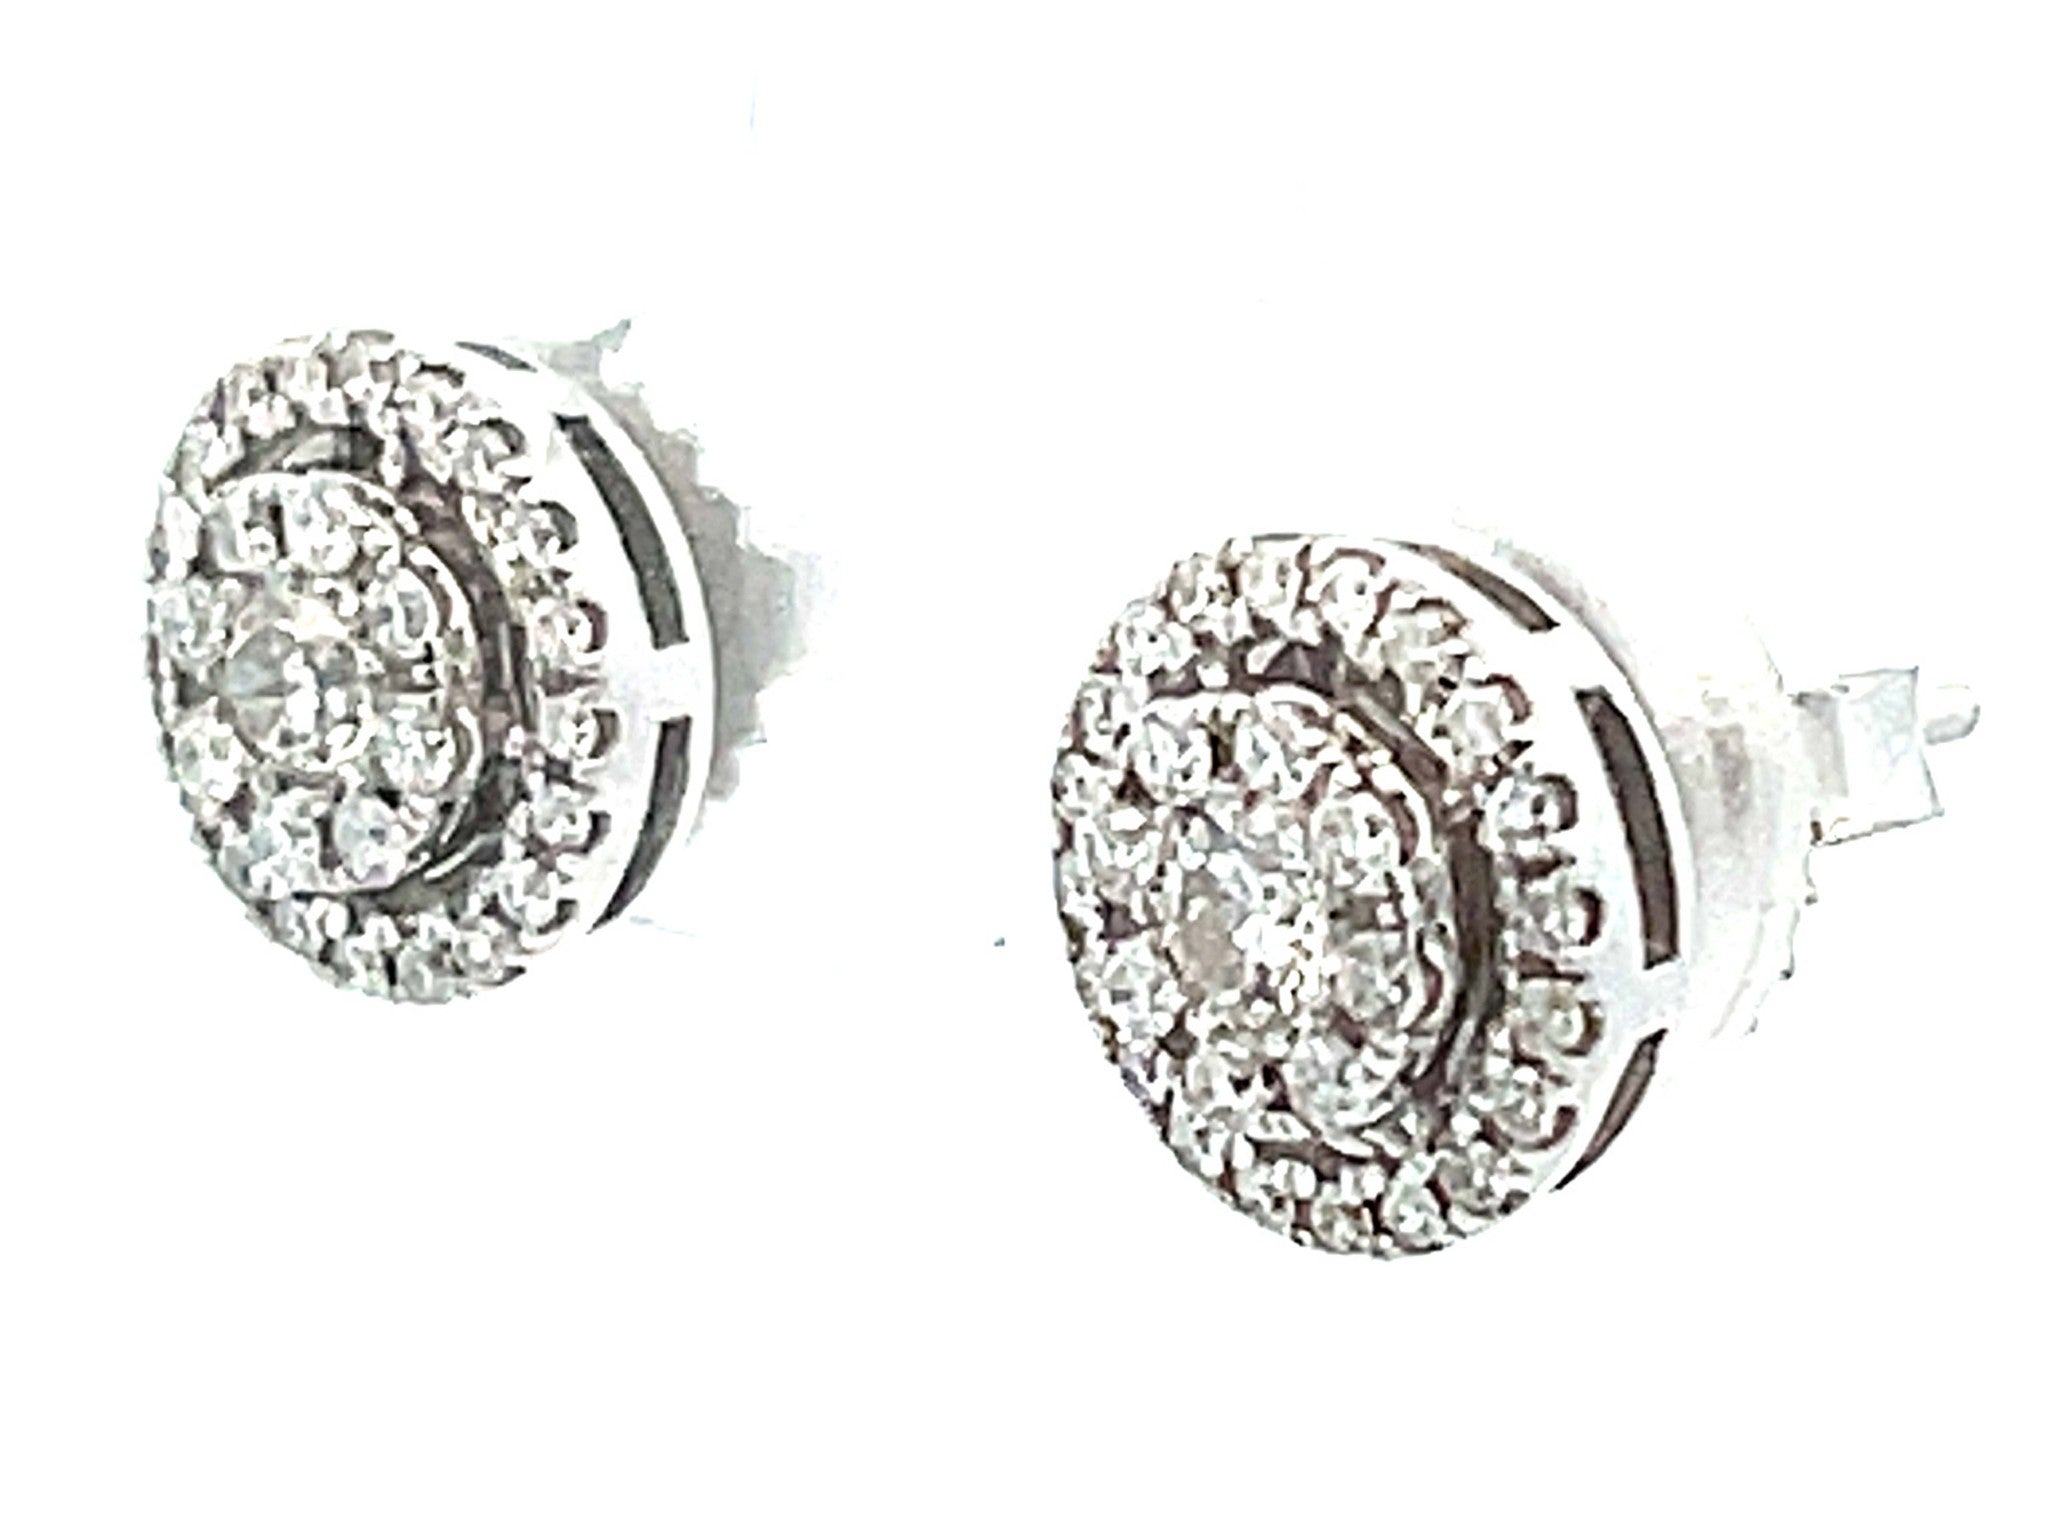 Double Halo Diamond Stud Earrings in 14k White Gold